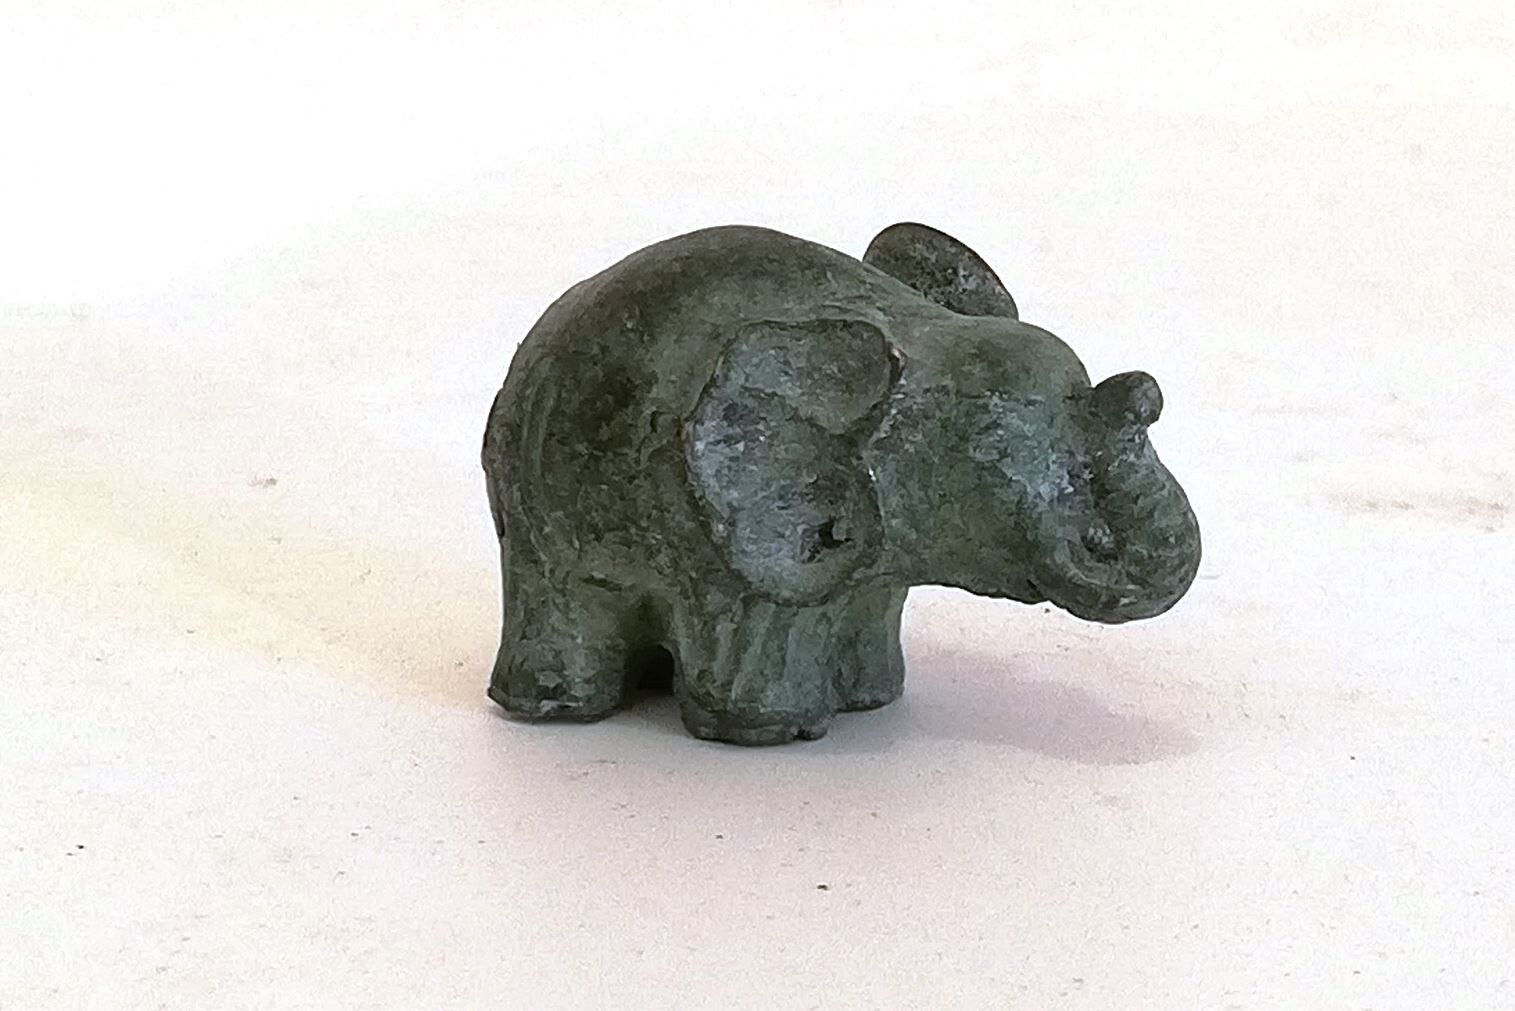 Micro Elefant i bronze - Lindas Have - Stort udvalg af granitfigurer, skulpturer, fontæner og vandsten, bænke, borde og fuglebade til bassinduge og pumper haver i det ganske, danske